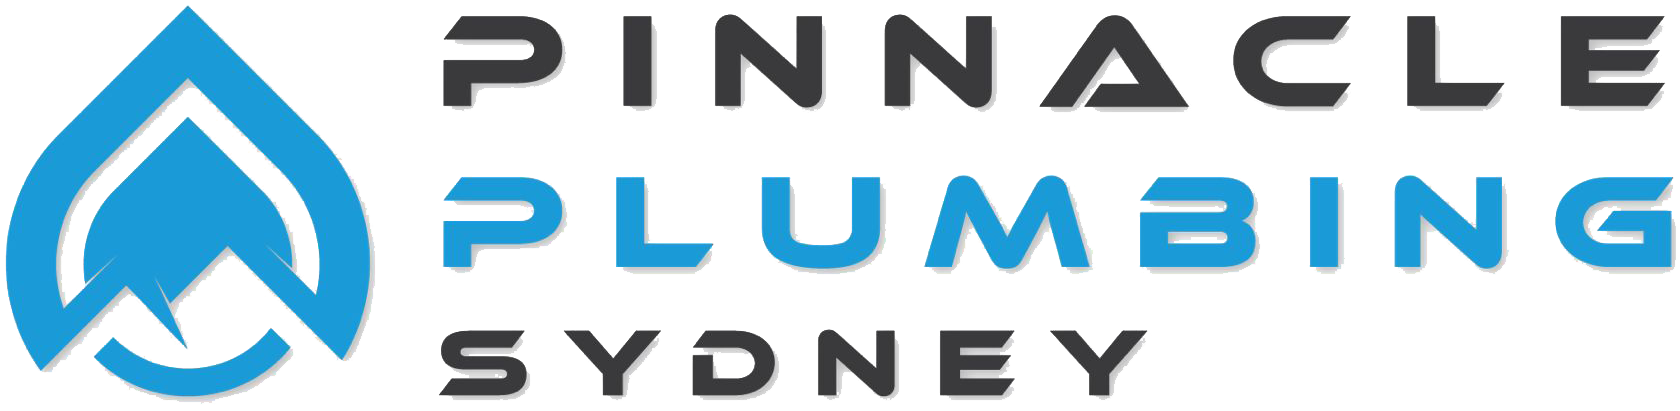 Pinnacle Plumbing Sydney